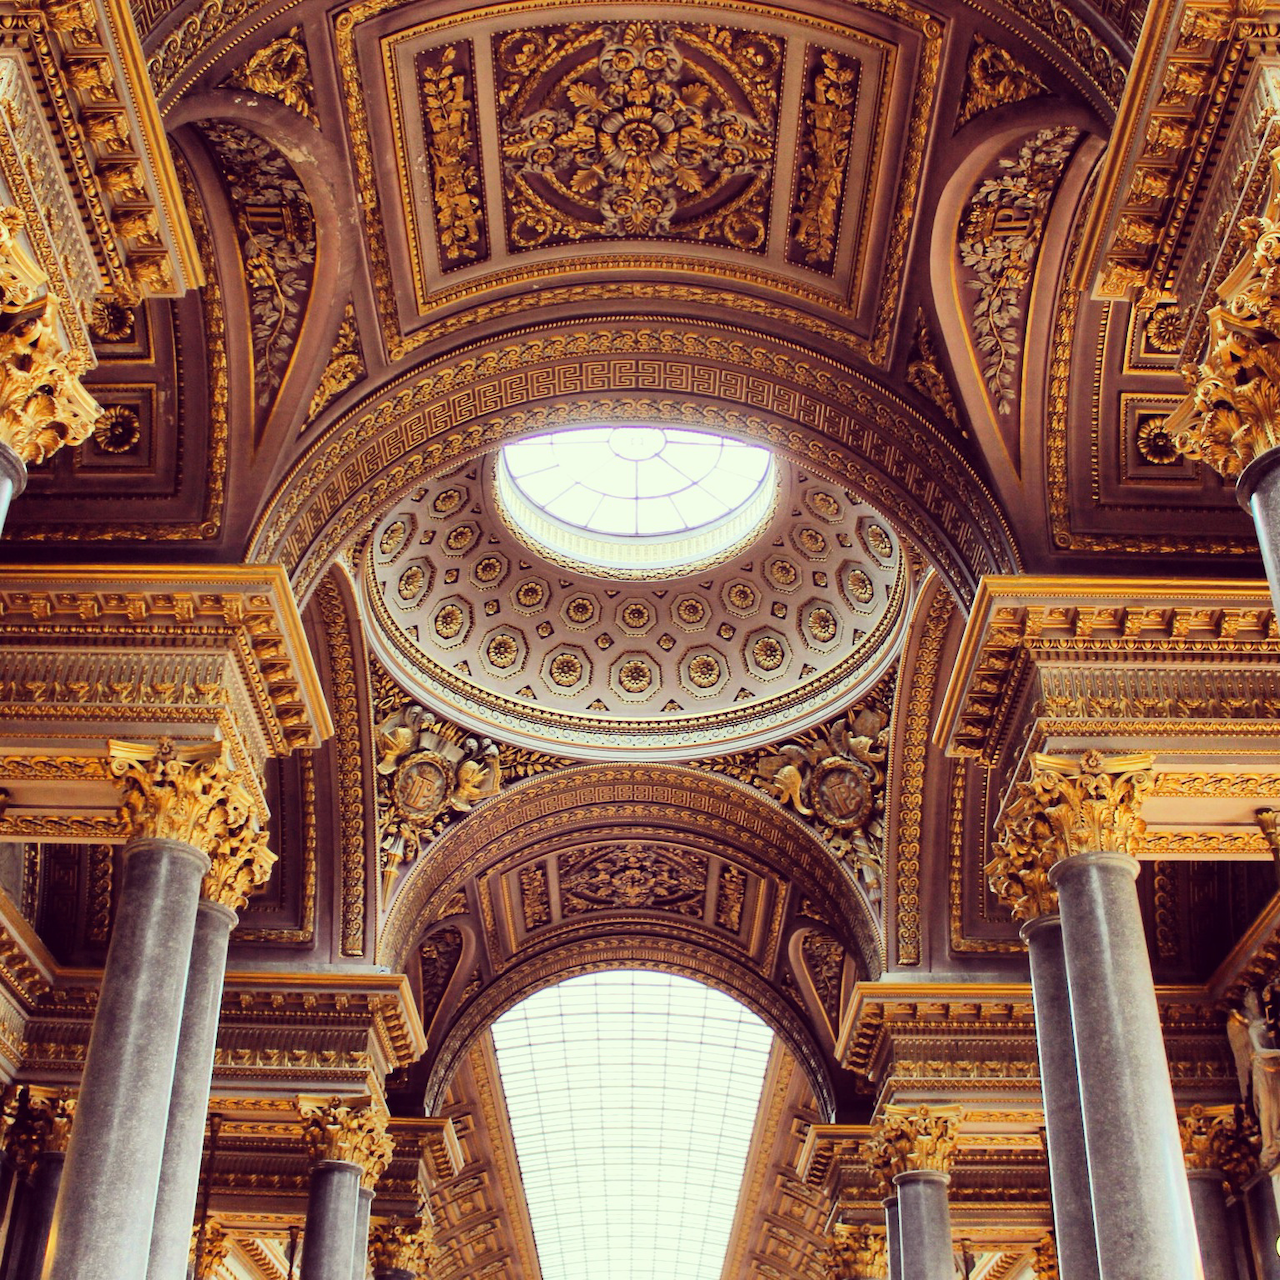 Les détails du plafond au musée du Louvre - Paris - France